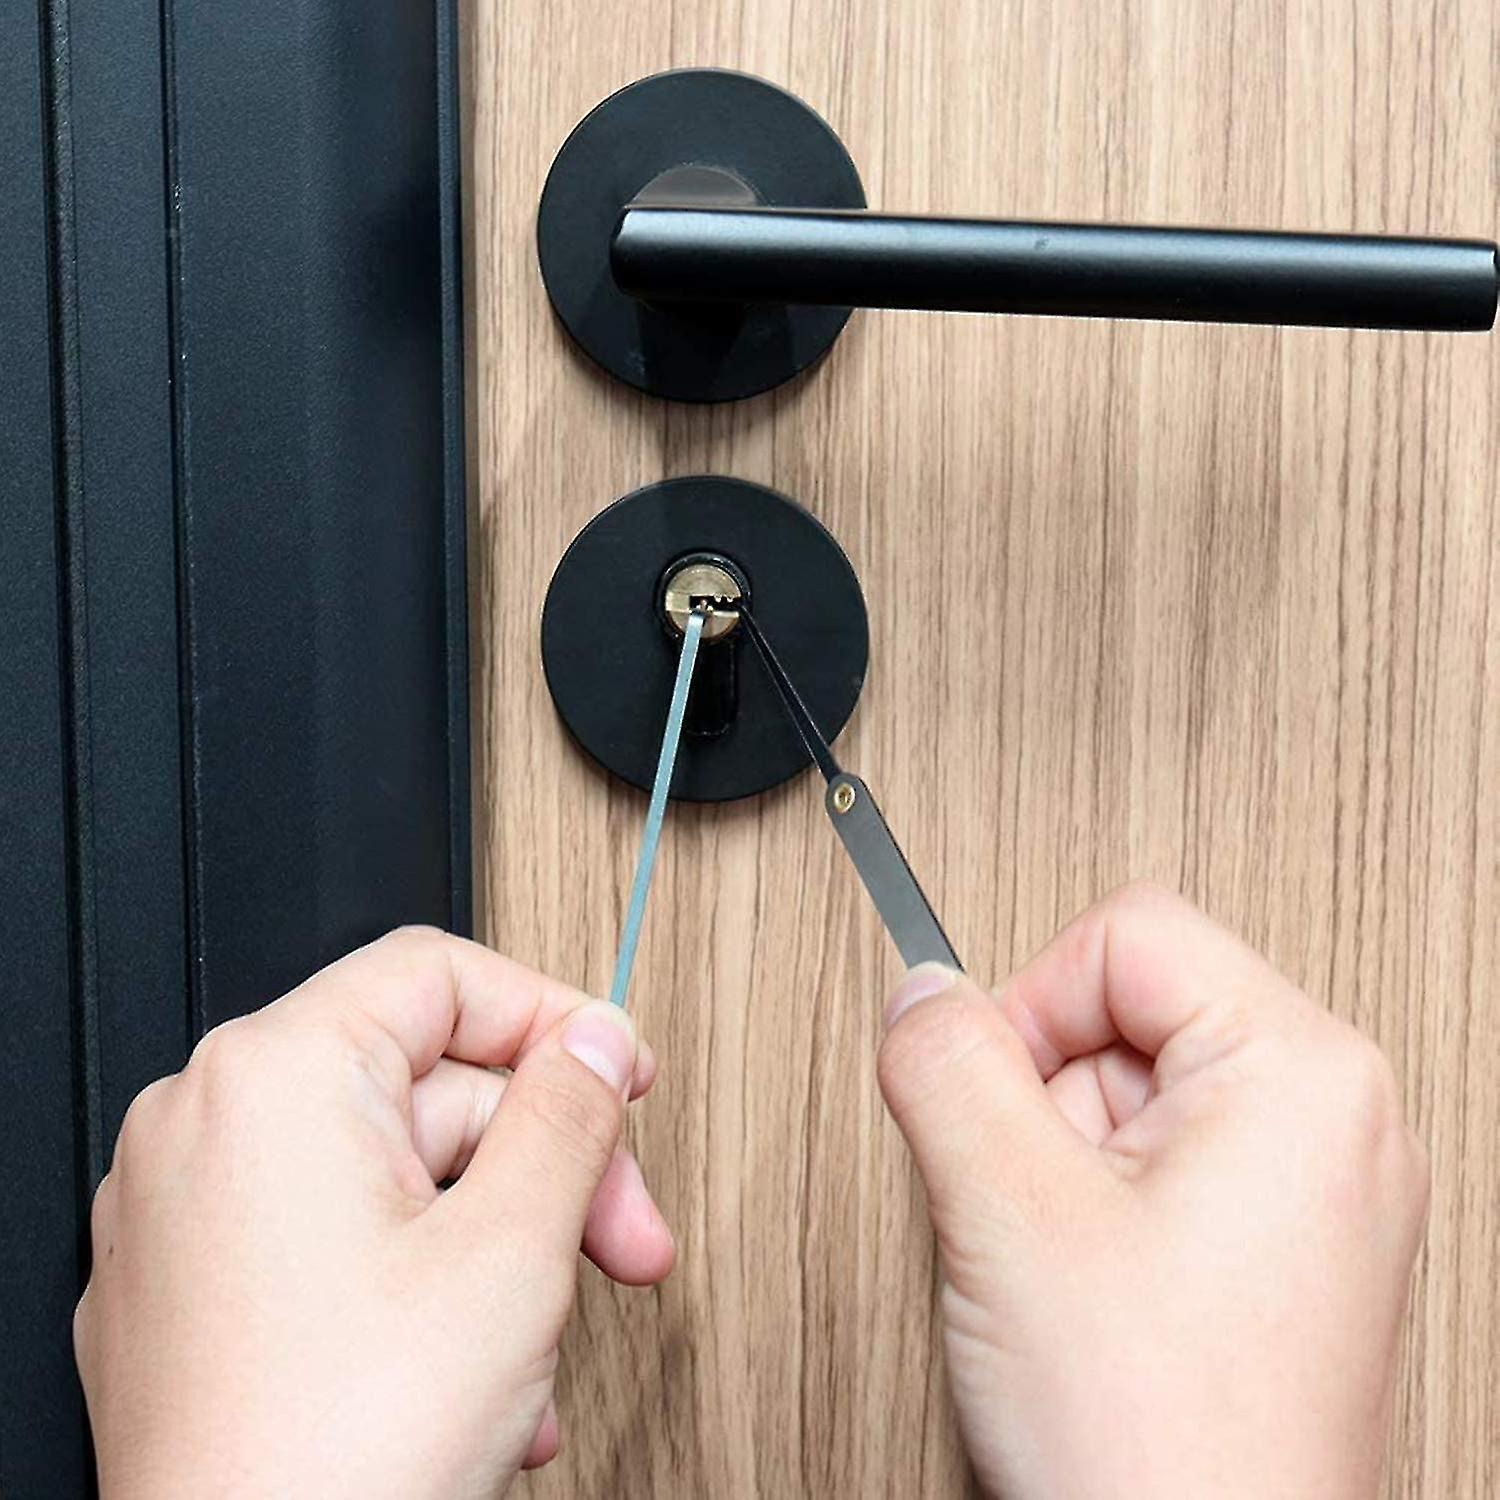 How To Pick An Interior Door Lock